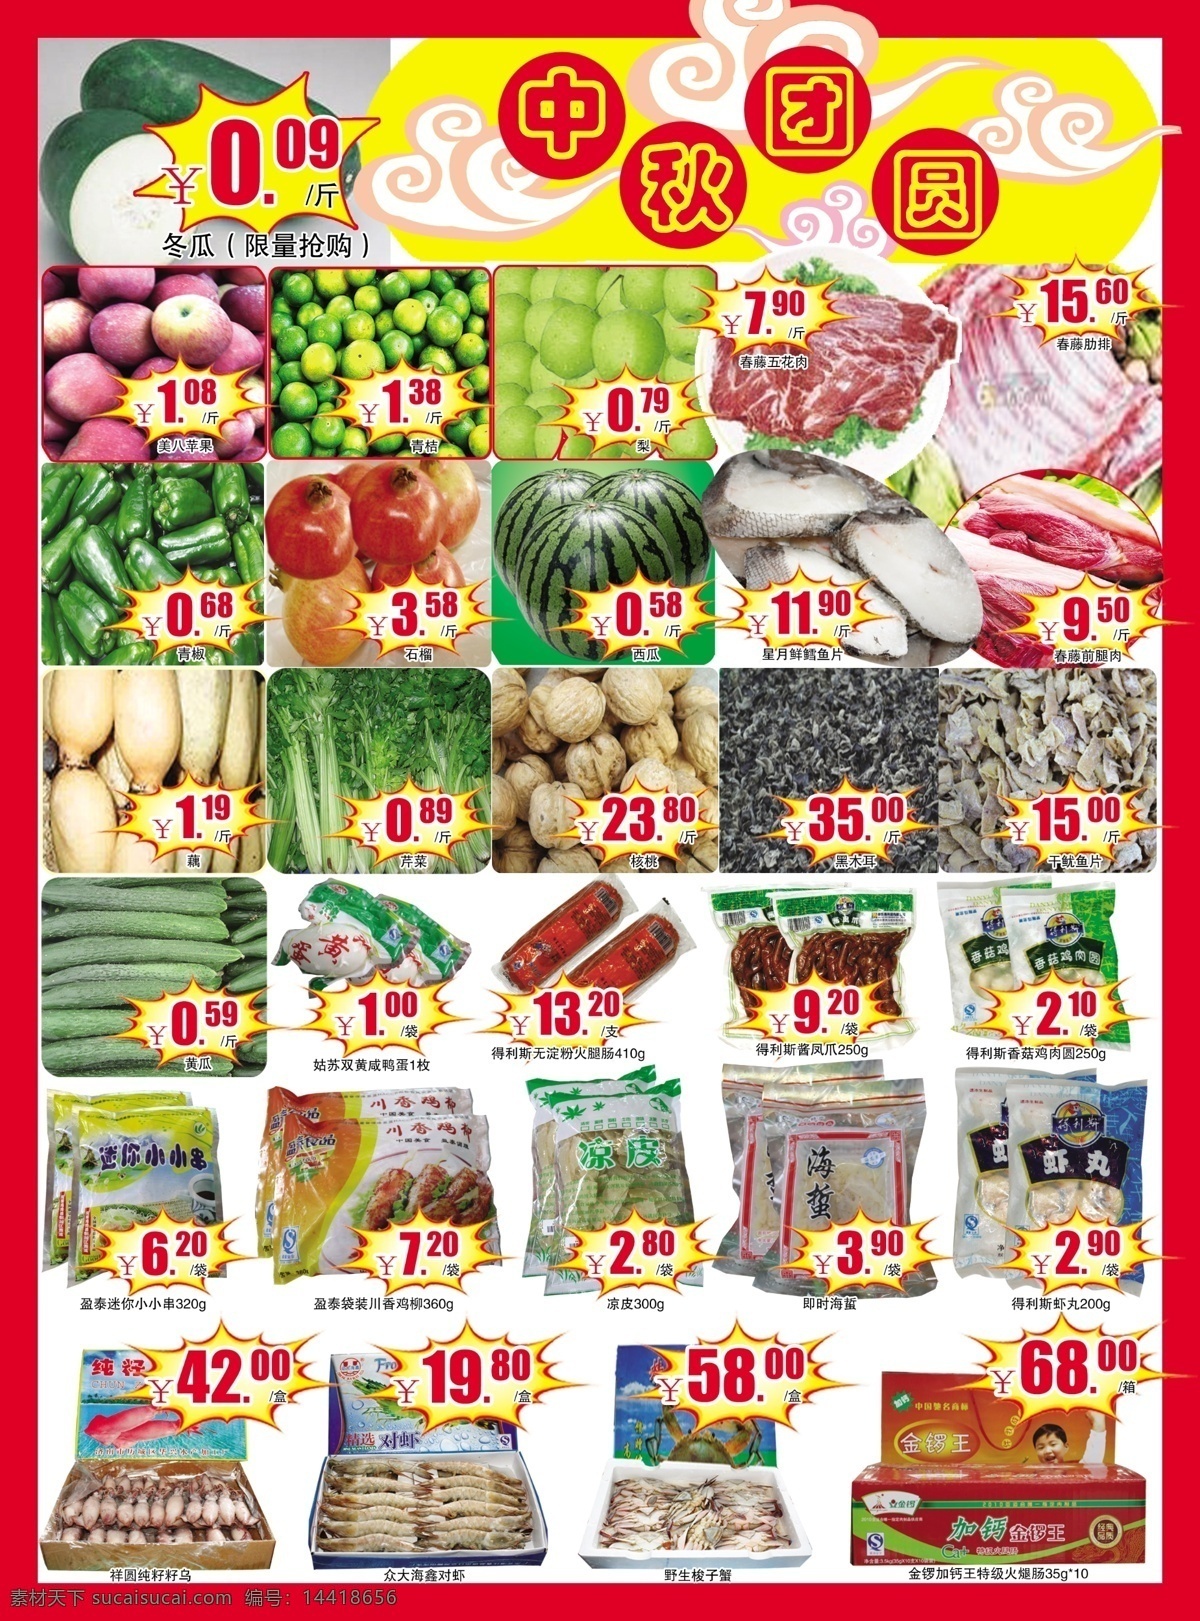 超市广告 生鲜 超市促销 北京文化超市 中秋团圆 蔬菜 水果 dm宣传单 广告设计模板 源文件